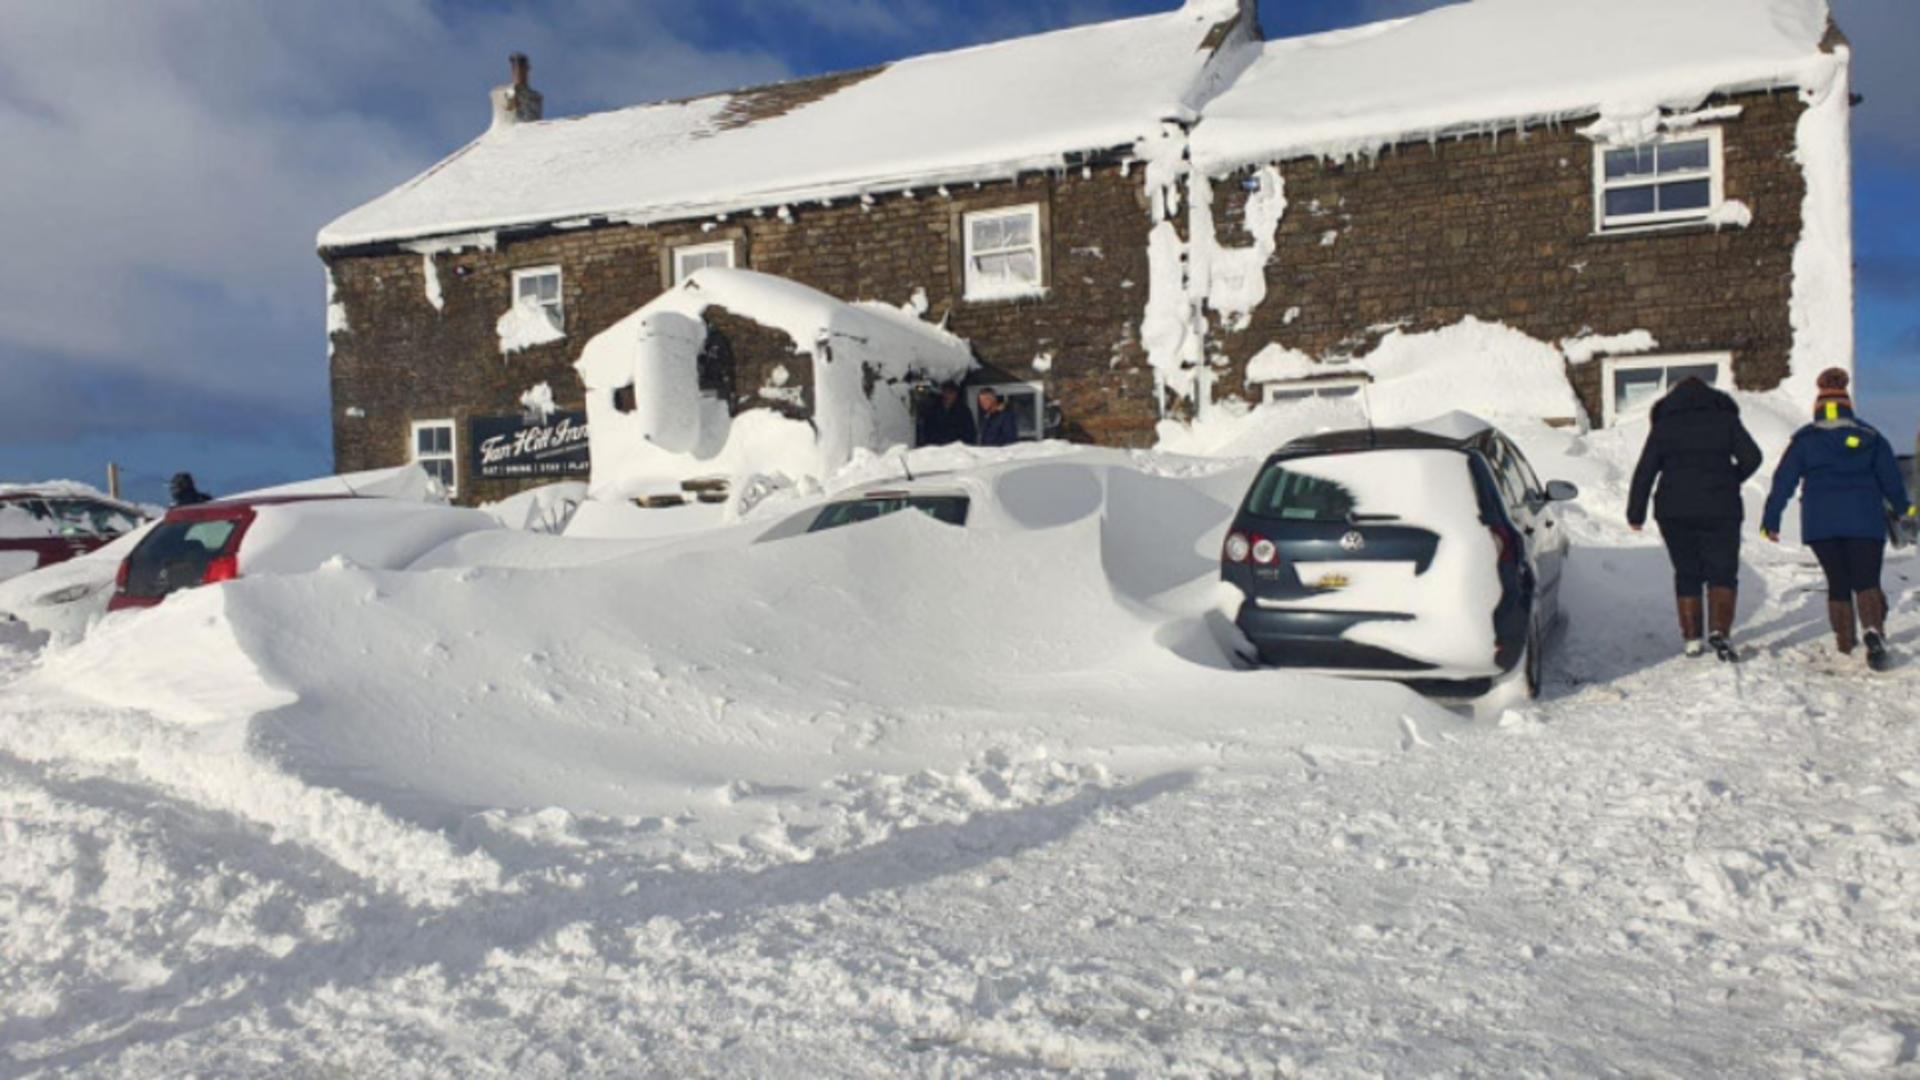 Furtuna de zăpadă a făcut ravagii în Anglia / Sursa foto: Facebook